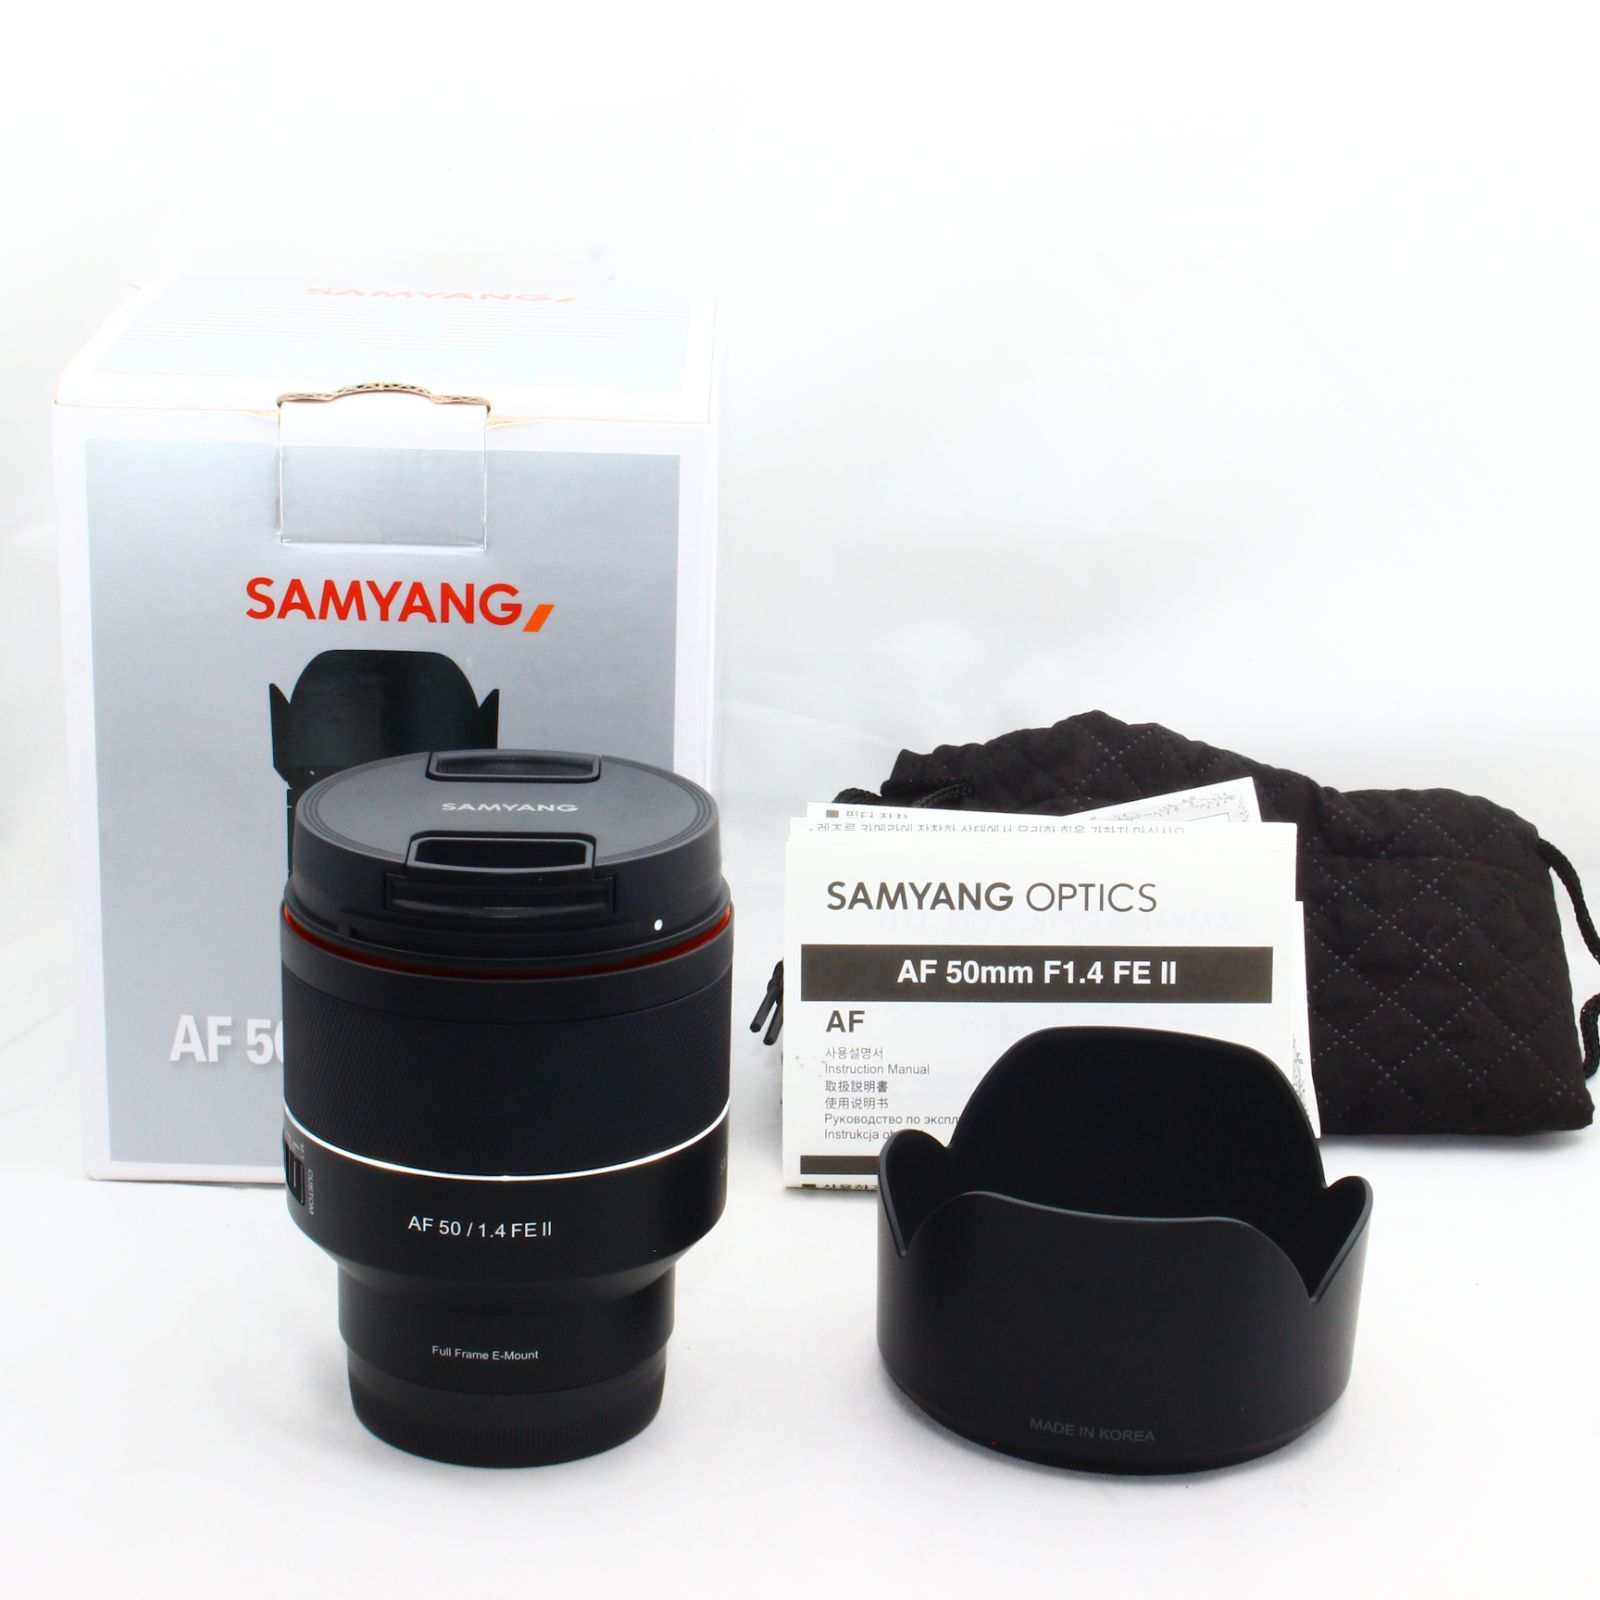 SAMYANG 単焦点レンズ AF 50mm F1.4 FE II ソニー α Eマウント フルサイズ対応